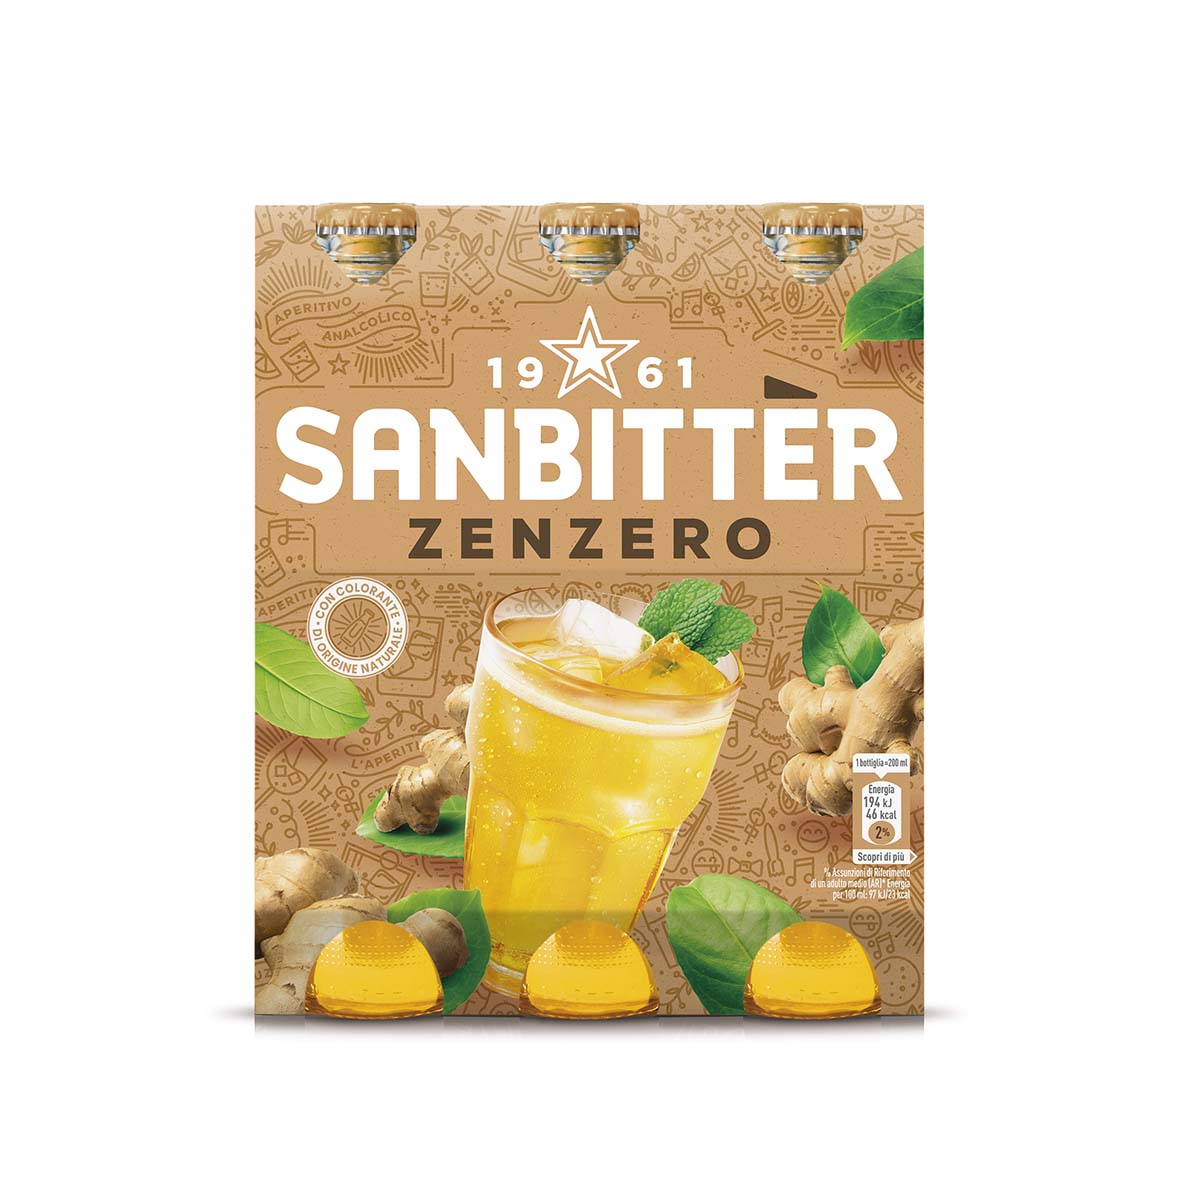 Sanbittèr Zenzero x3